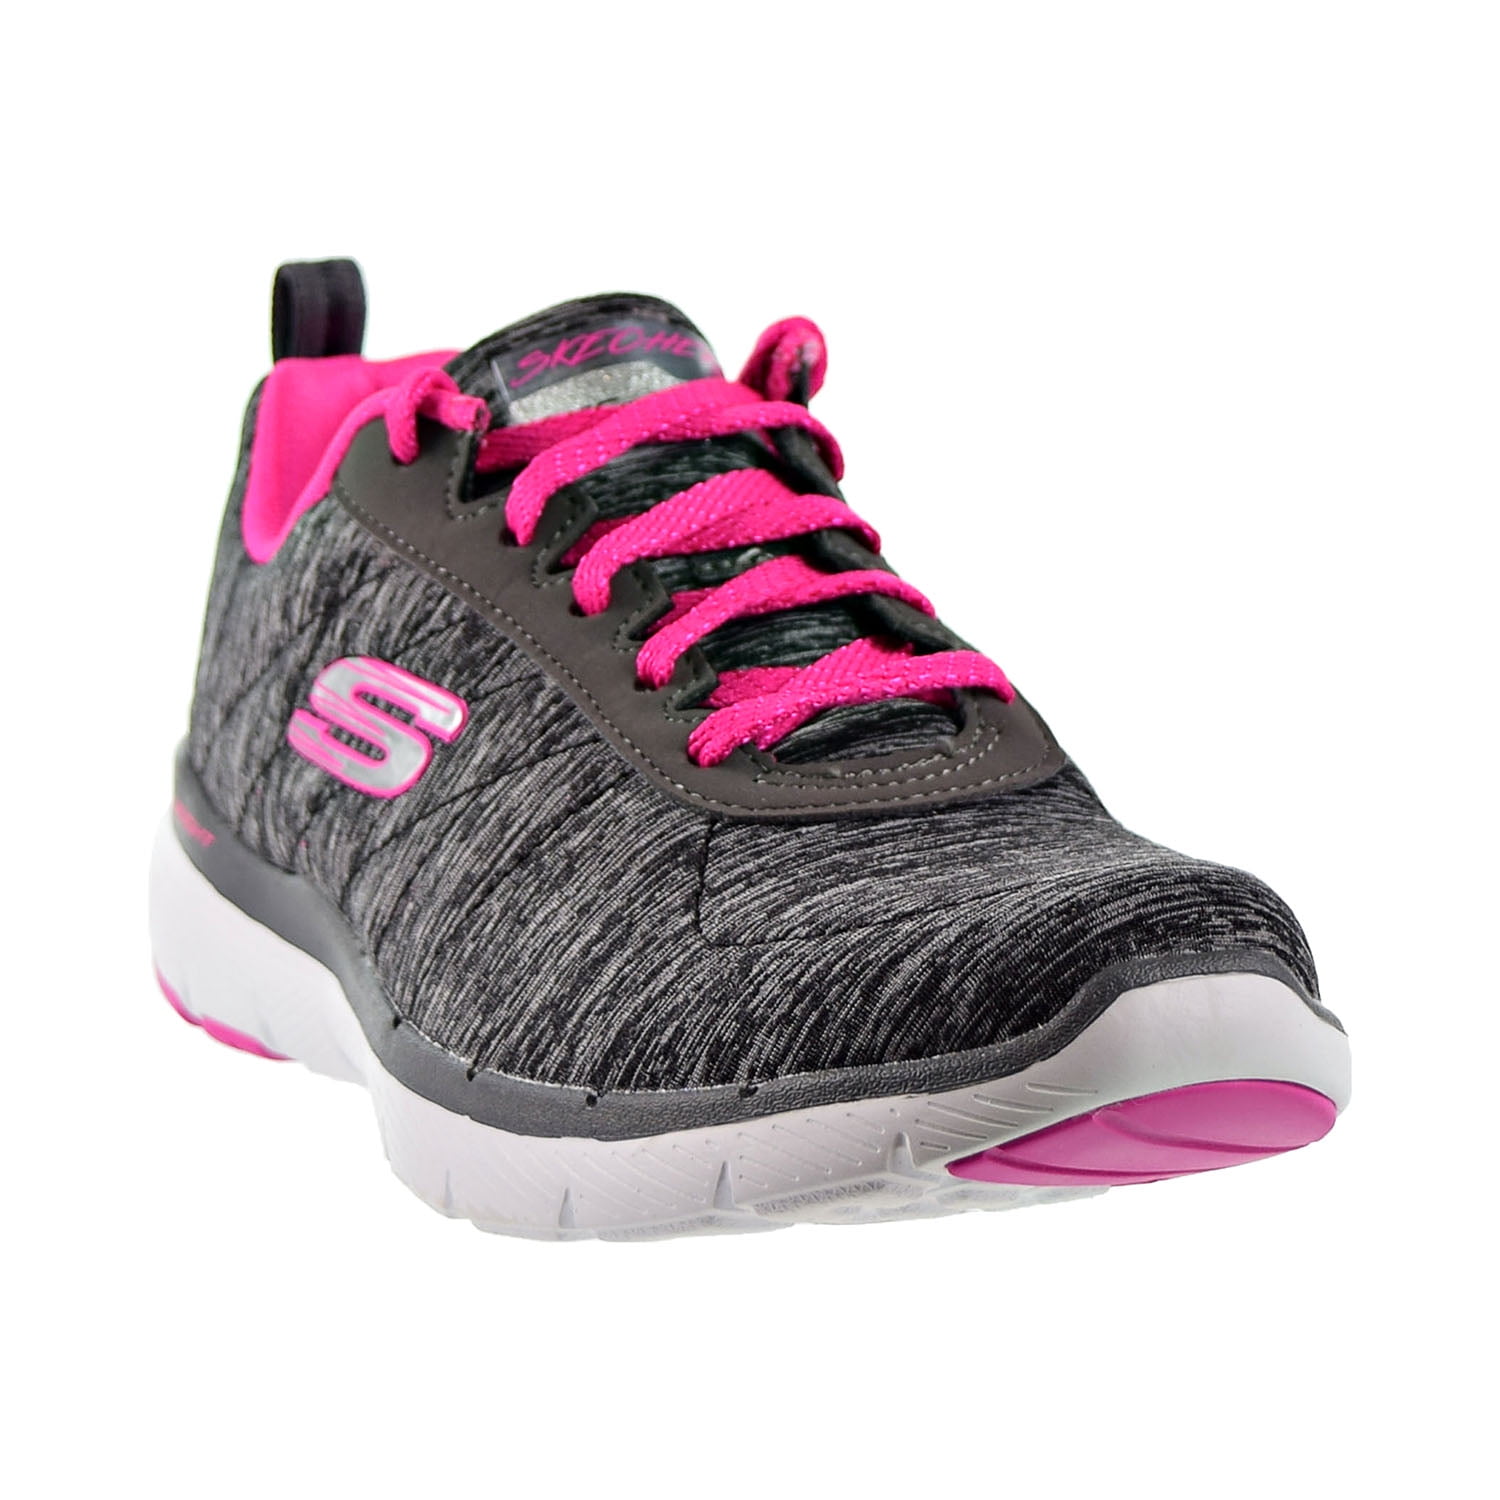 Skechers Appeal 3.0 Insiders Sneakers (Women) -